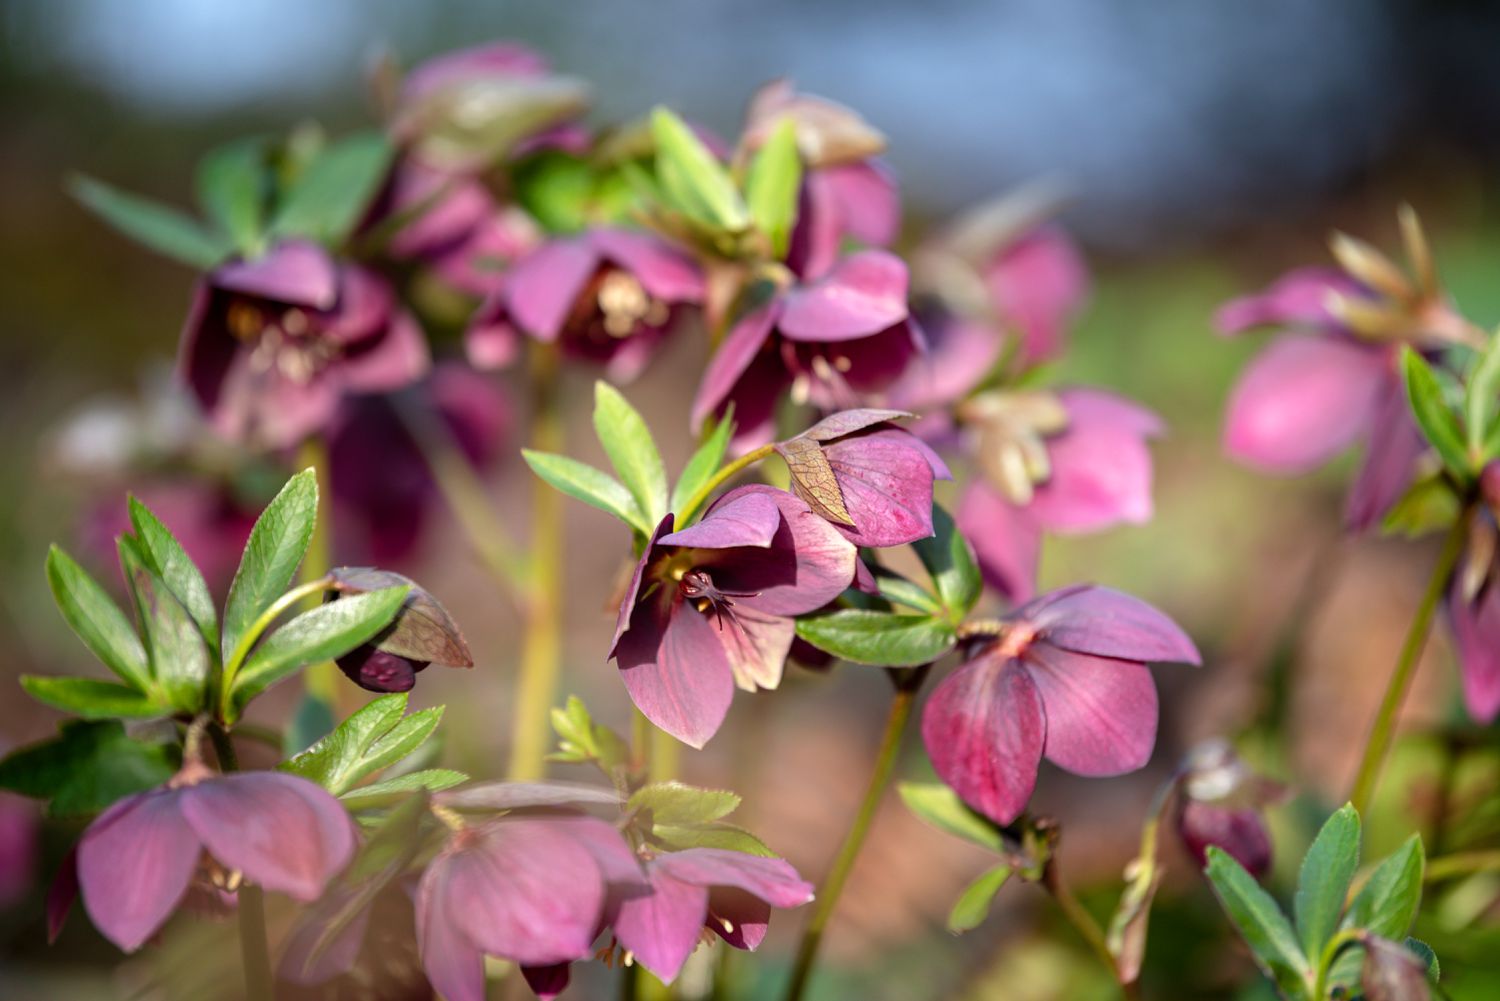 Hellebore-Pflanze mit rosa-violetten Blüten auf dünnen Stielen